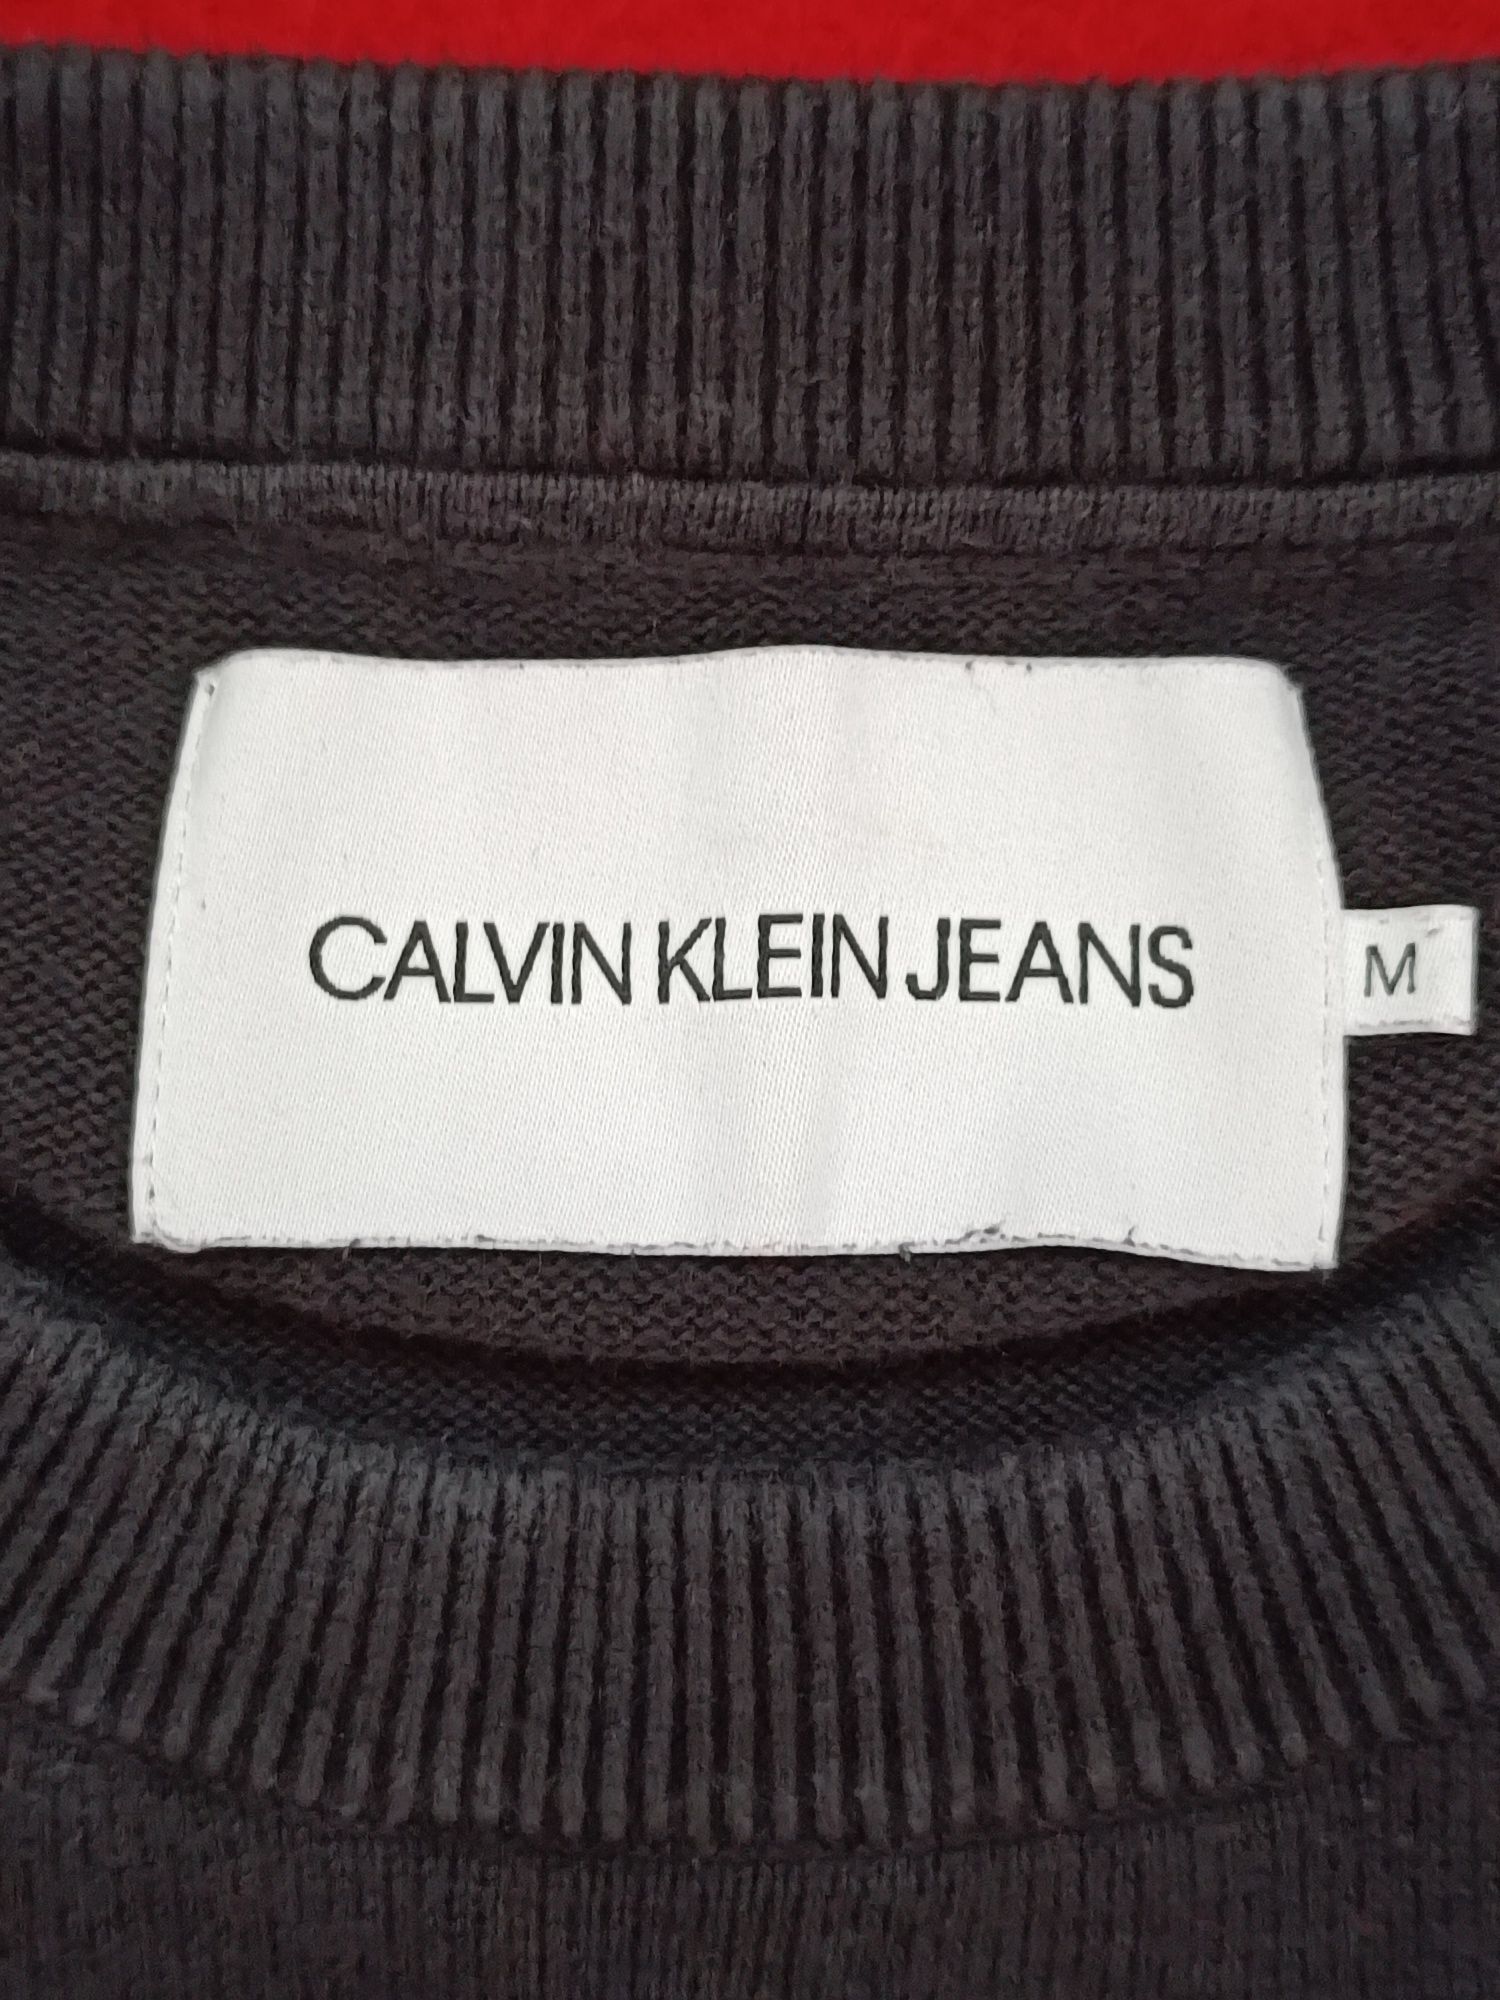 Продам оригинальную женскую кофту Calvin Klein размер М